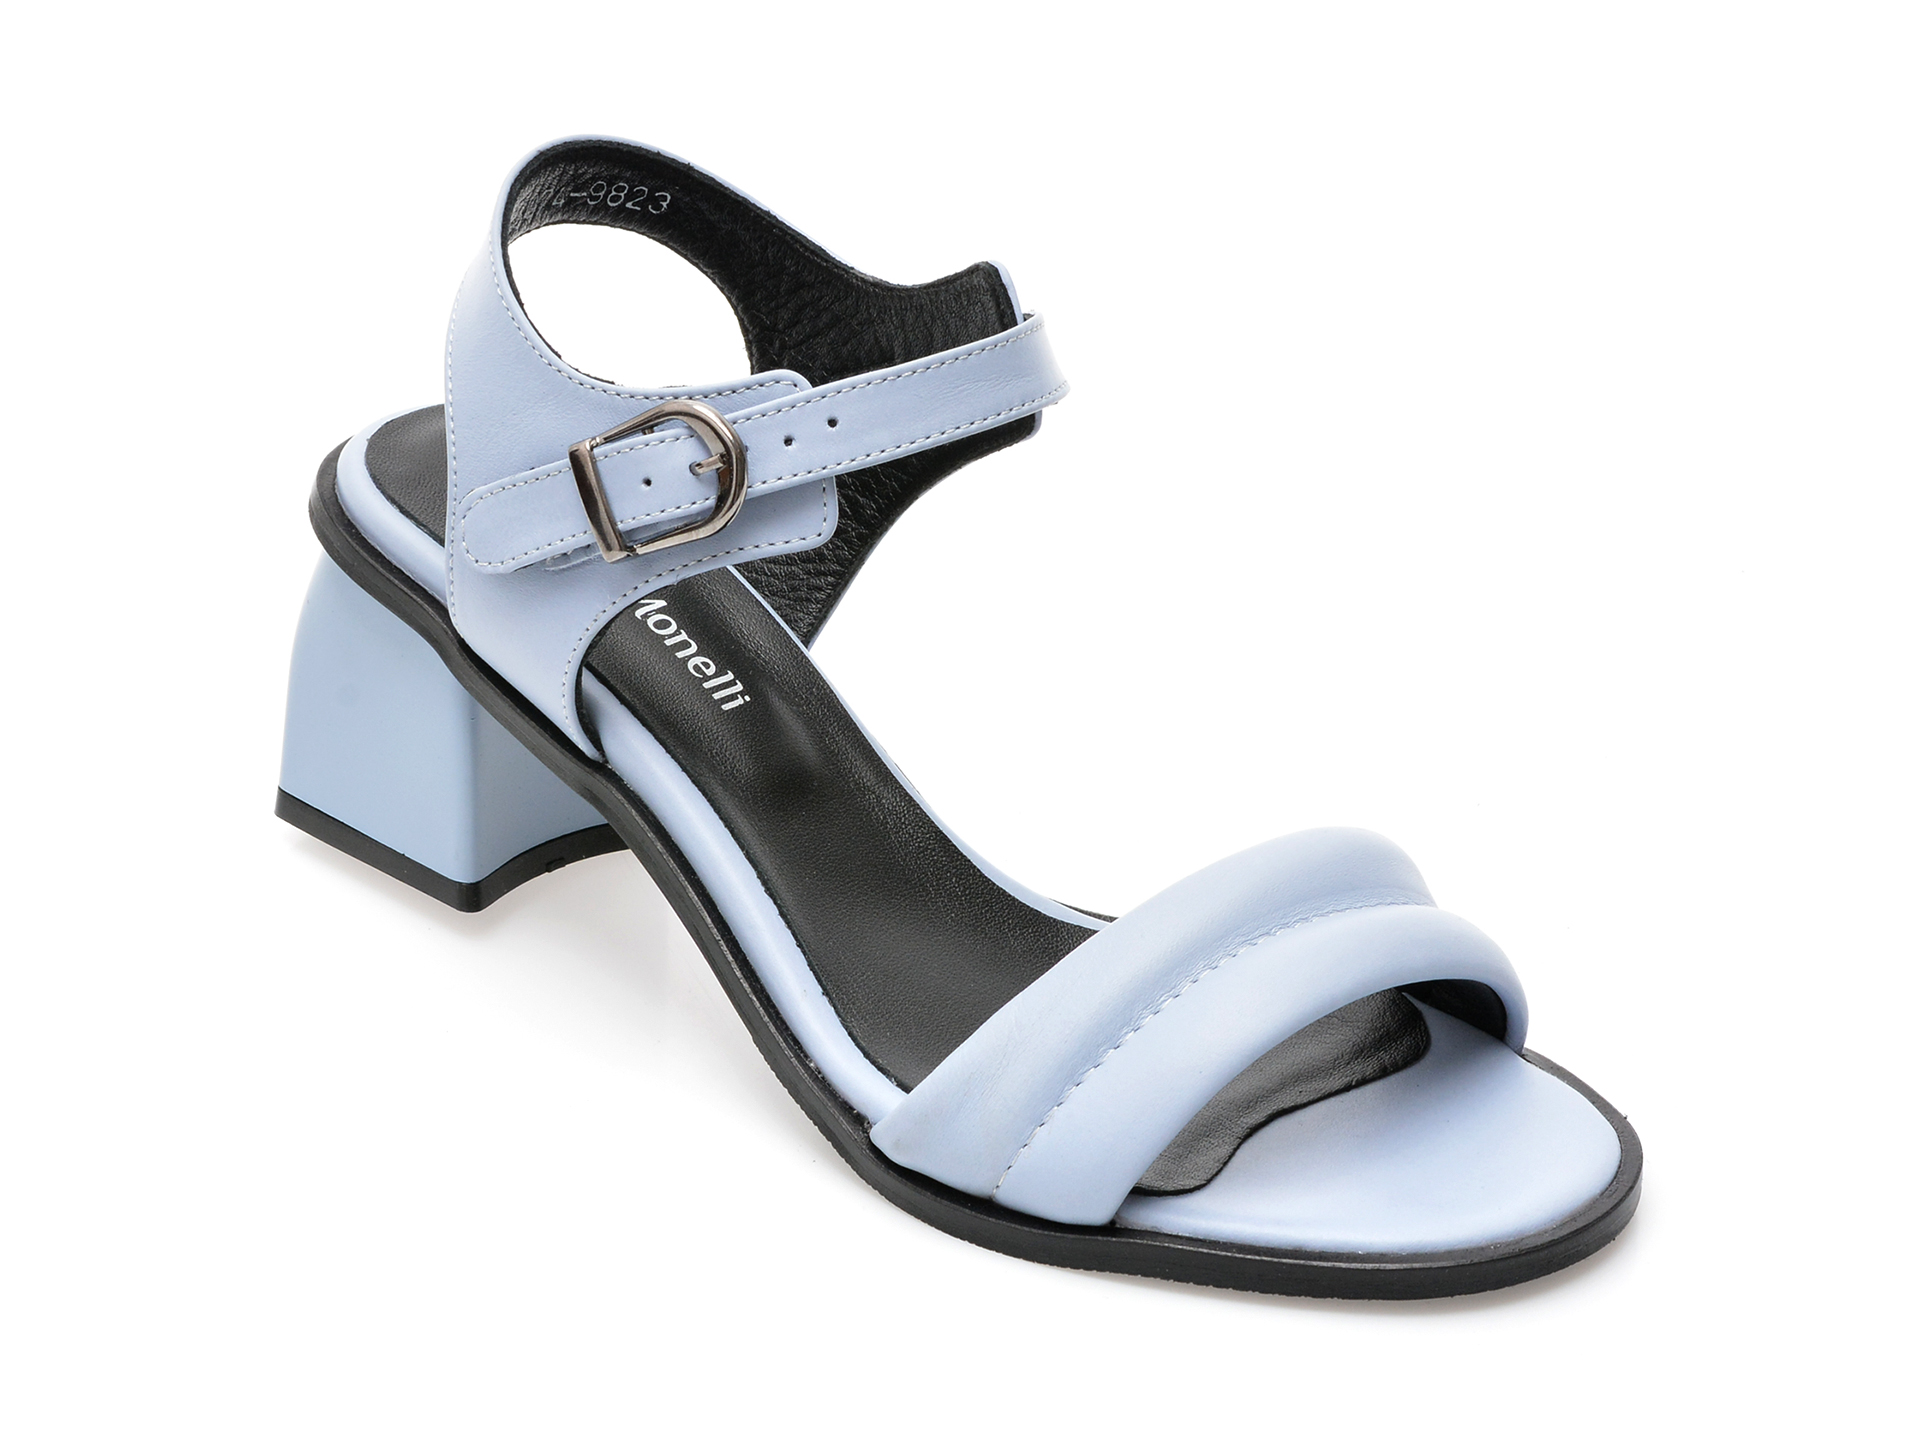 Sandale FABIO MONELLI albastre, 717, din piele naturala /femei/sandale imagine noua